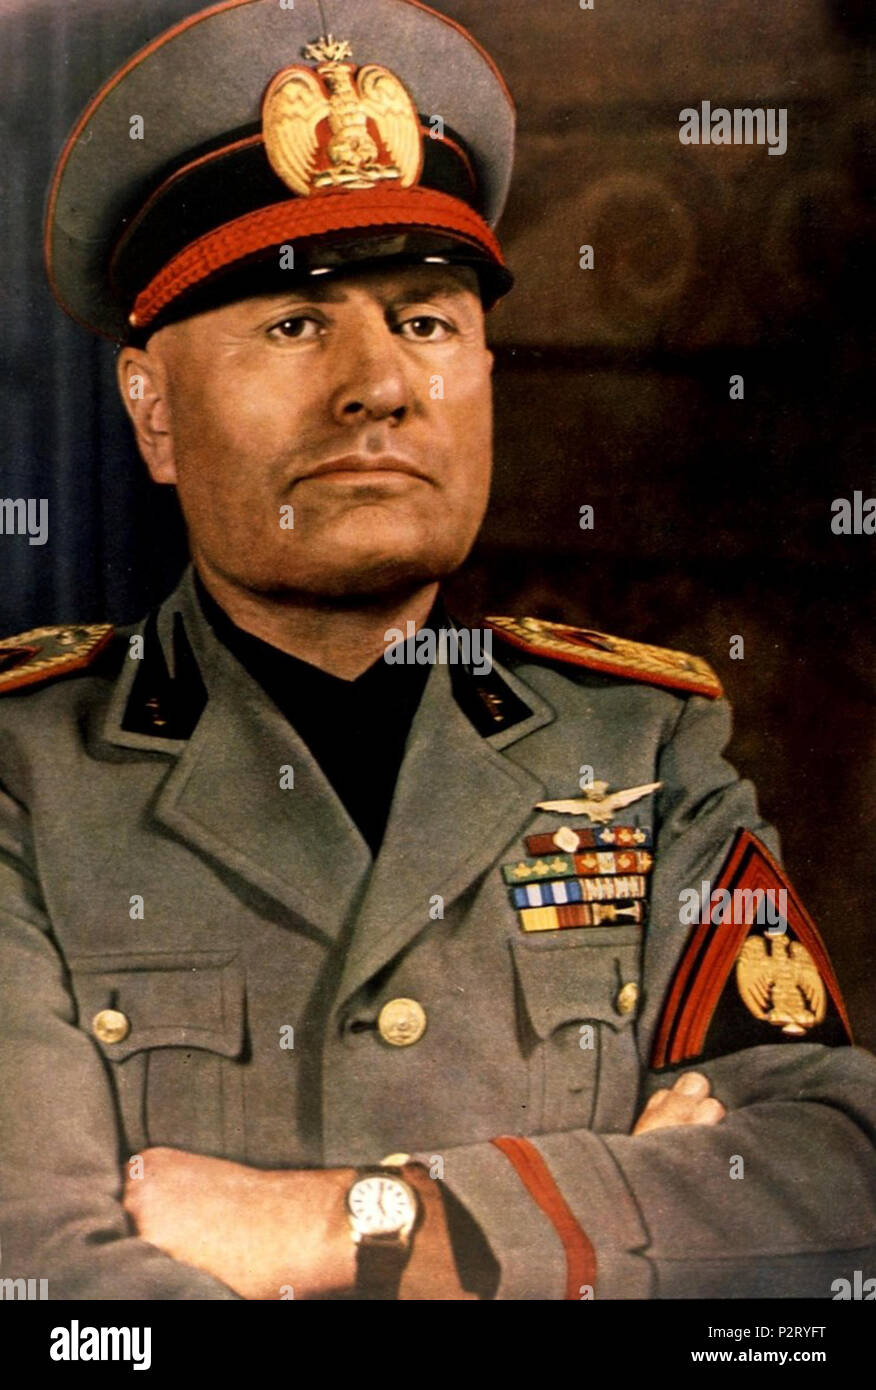 . Anglais : Benito Mussolini en 1940. Agfacolor photo de Roger Viollet. Autre version : http://cdn.amanaimages.com/cen3tzG4fTr7Gtw1PoeRer/22177002114.jpg . 3 avril 2006. Martianmister et VPS 11 couleur de Benito Mussolini Banque D'Images